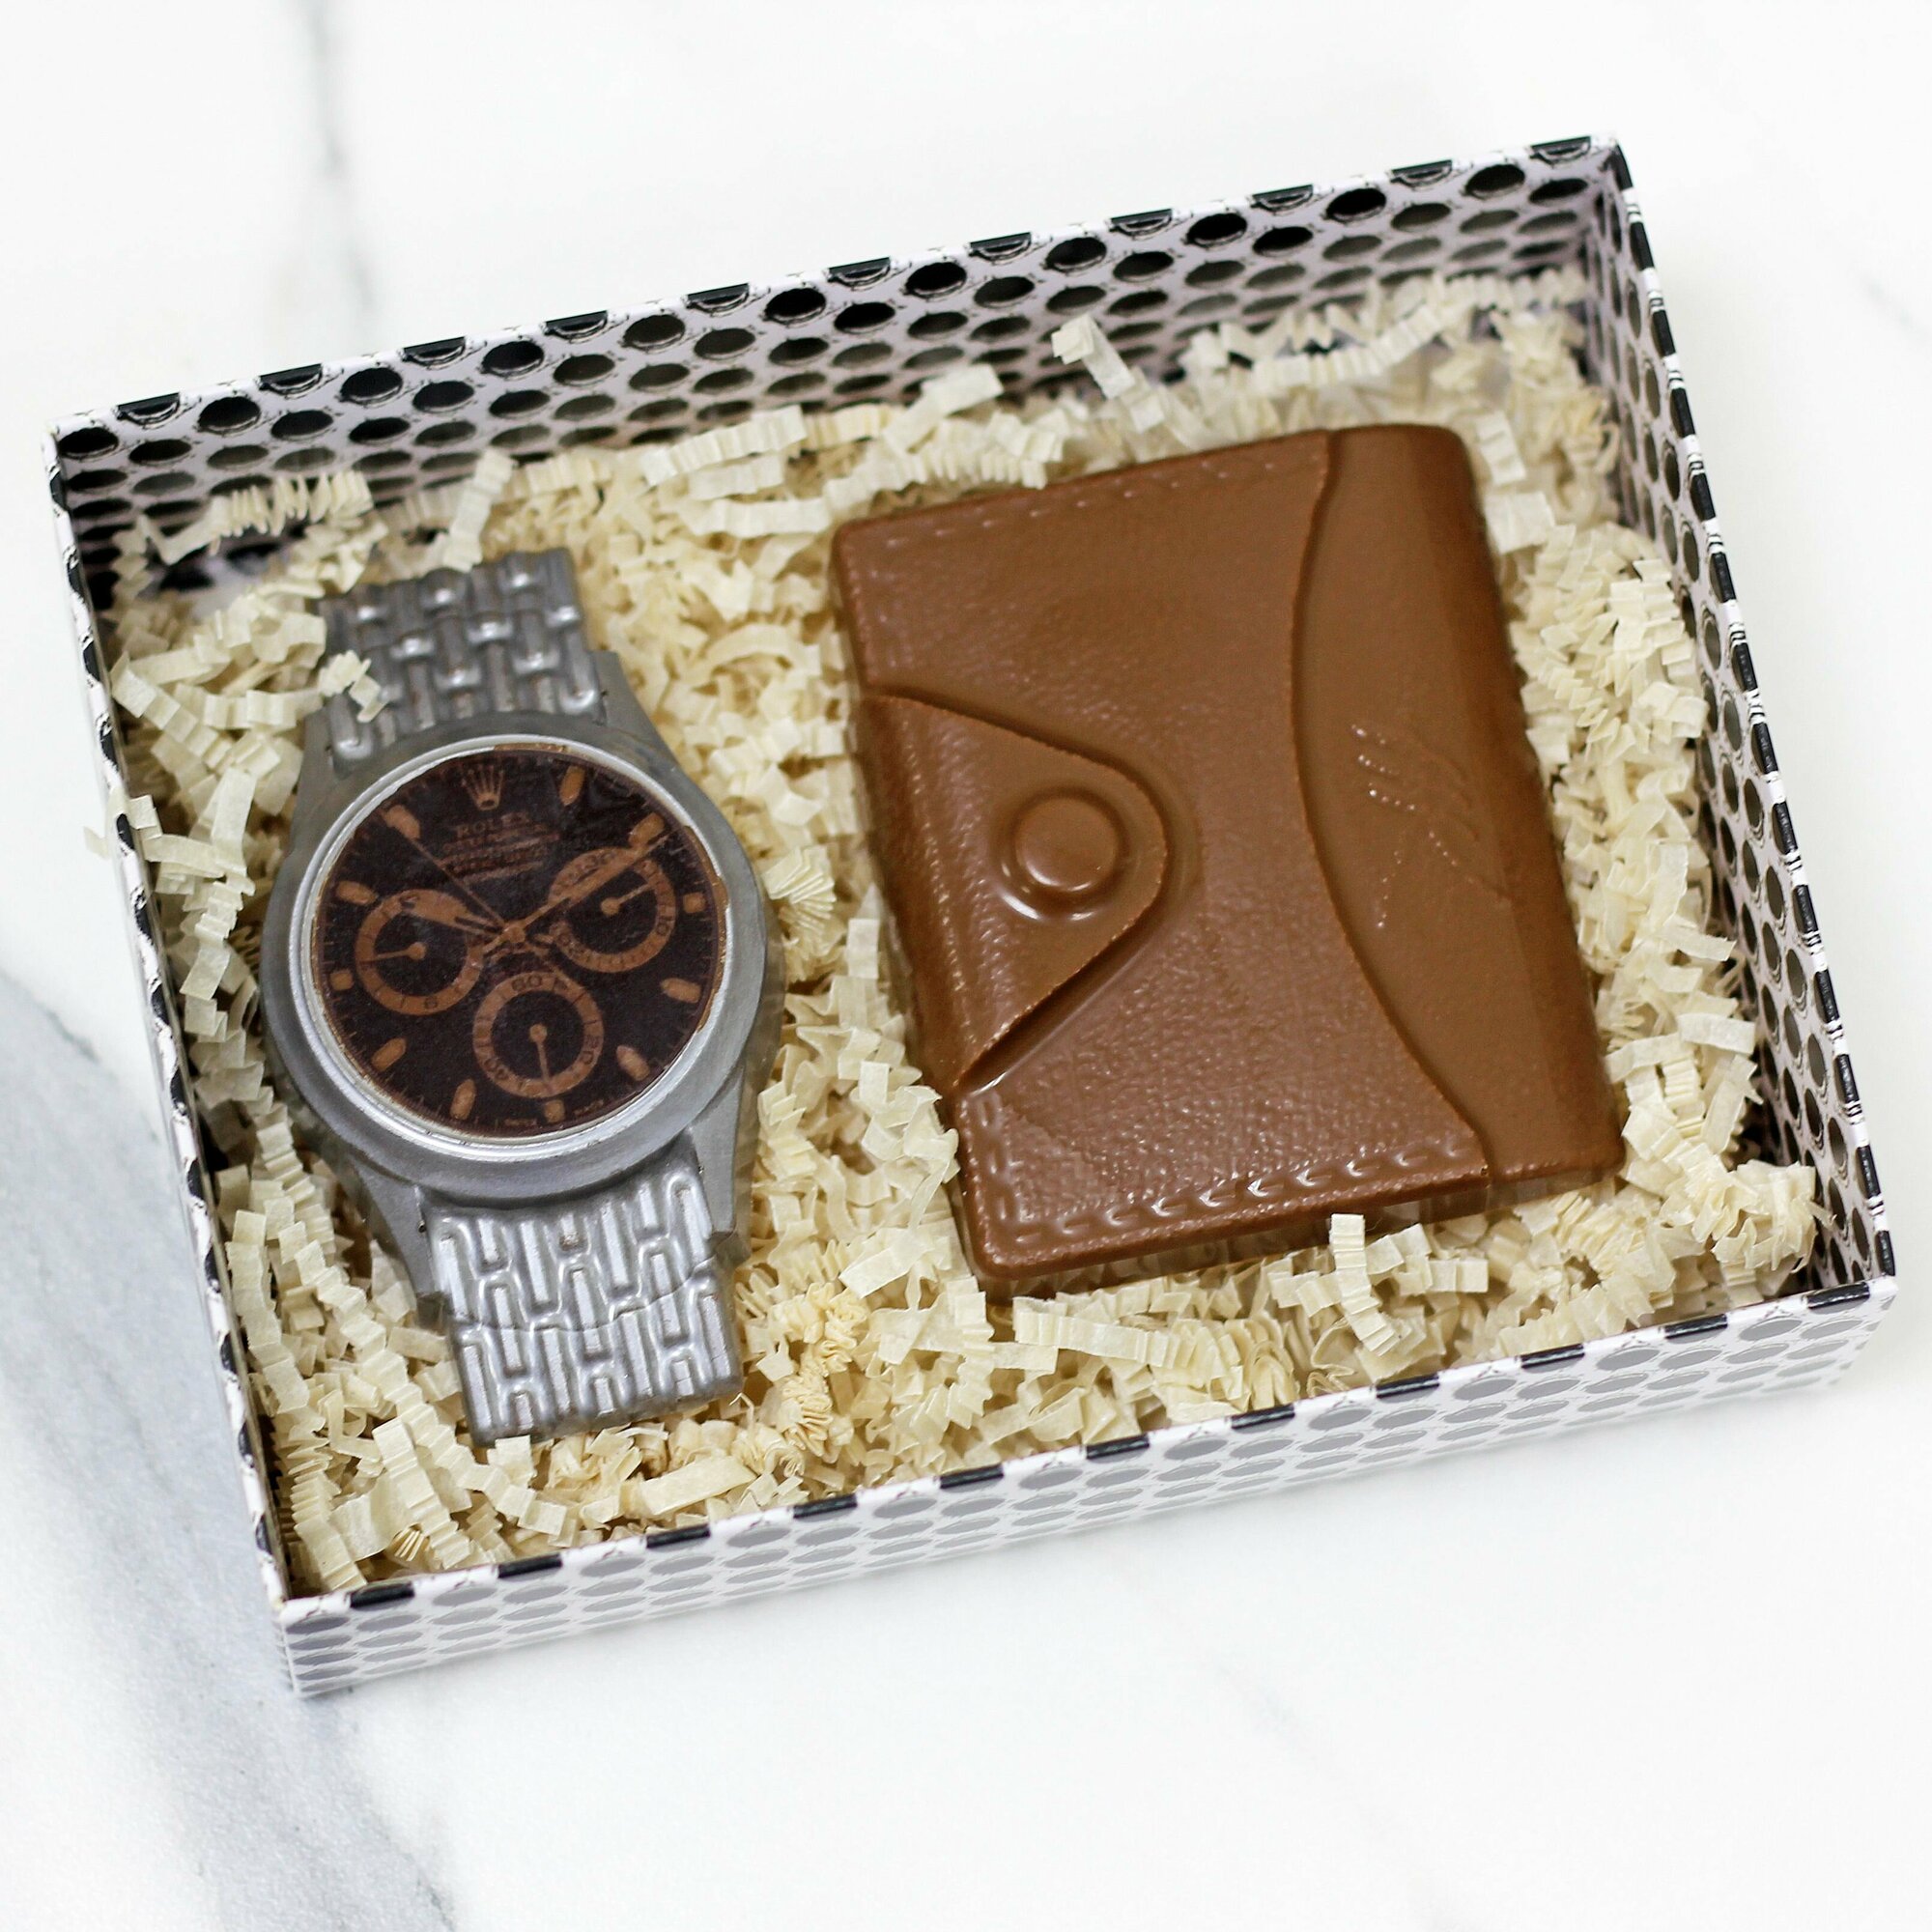 Подарочный набор мужчине, "Часы и портмоне", подарок на 23 февраля, шоколадные фигурки ручной работы, сладости к чаю, 120 грамм